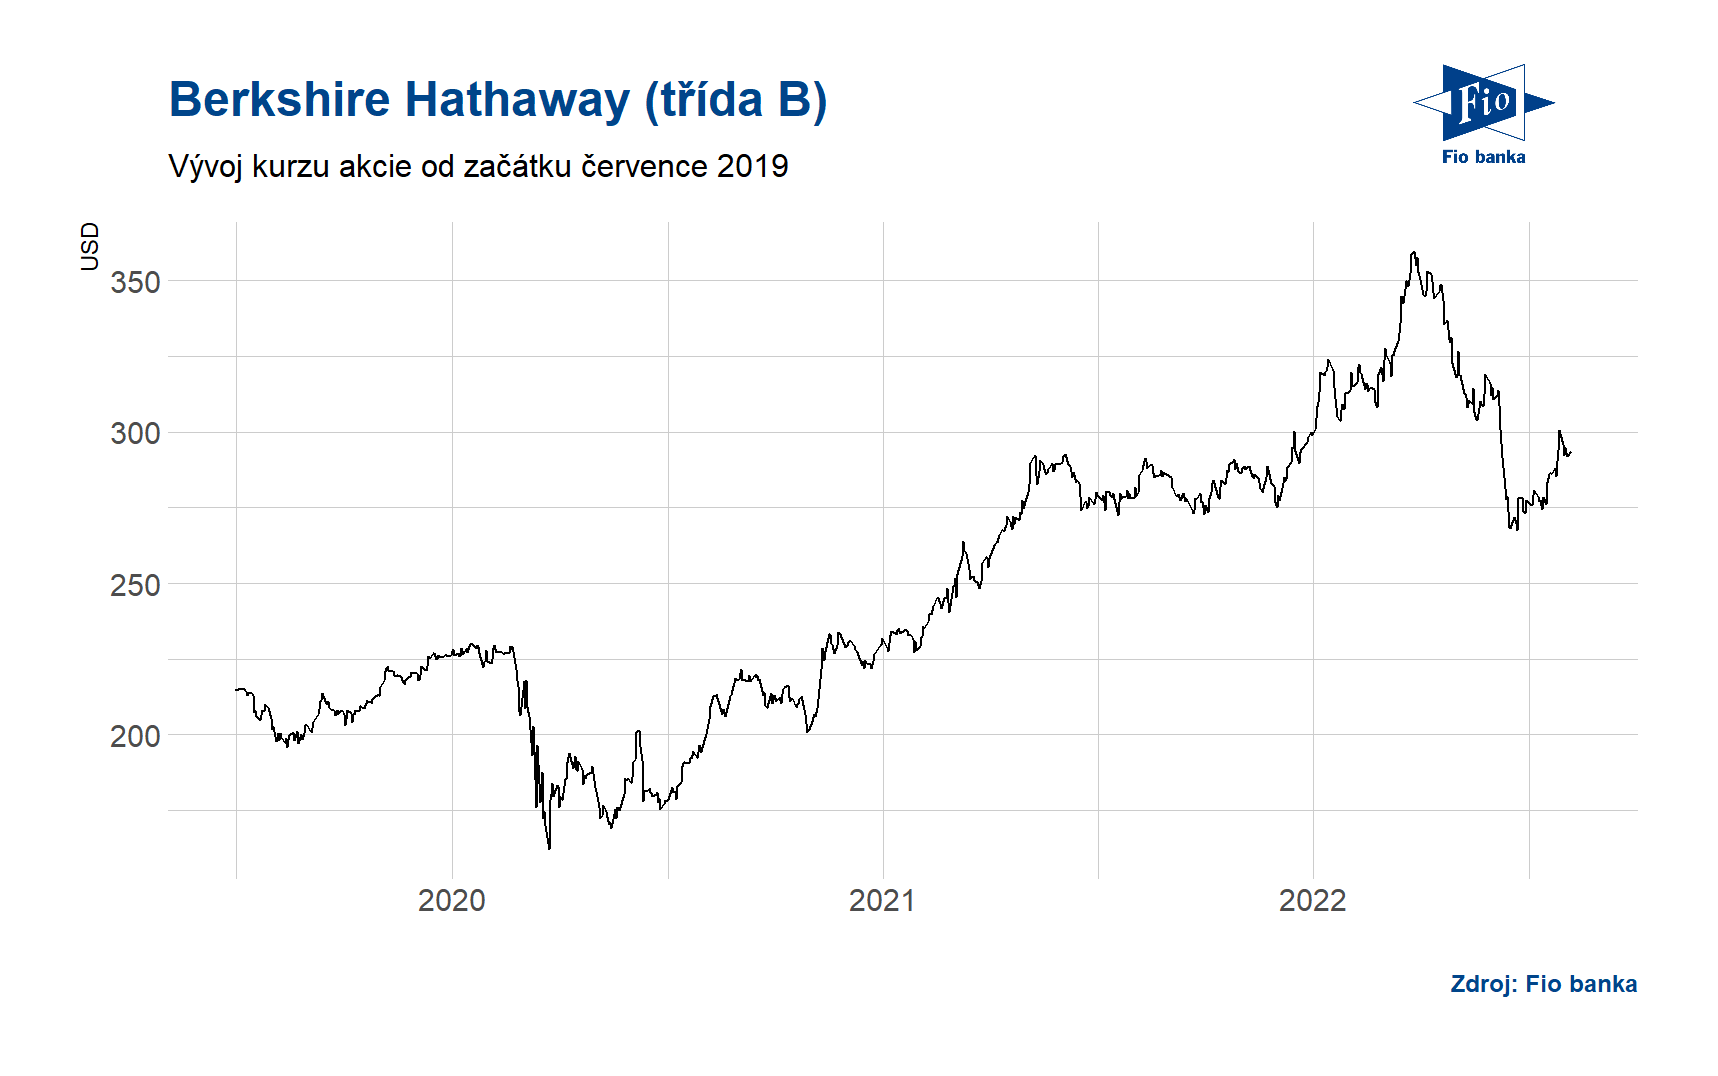 Vývoj akcií Berkshire Hathaway třídy B